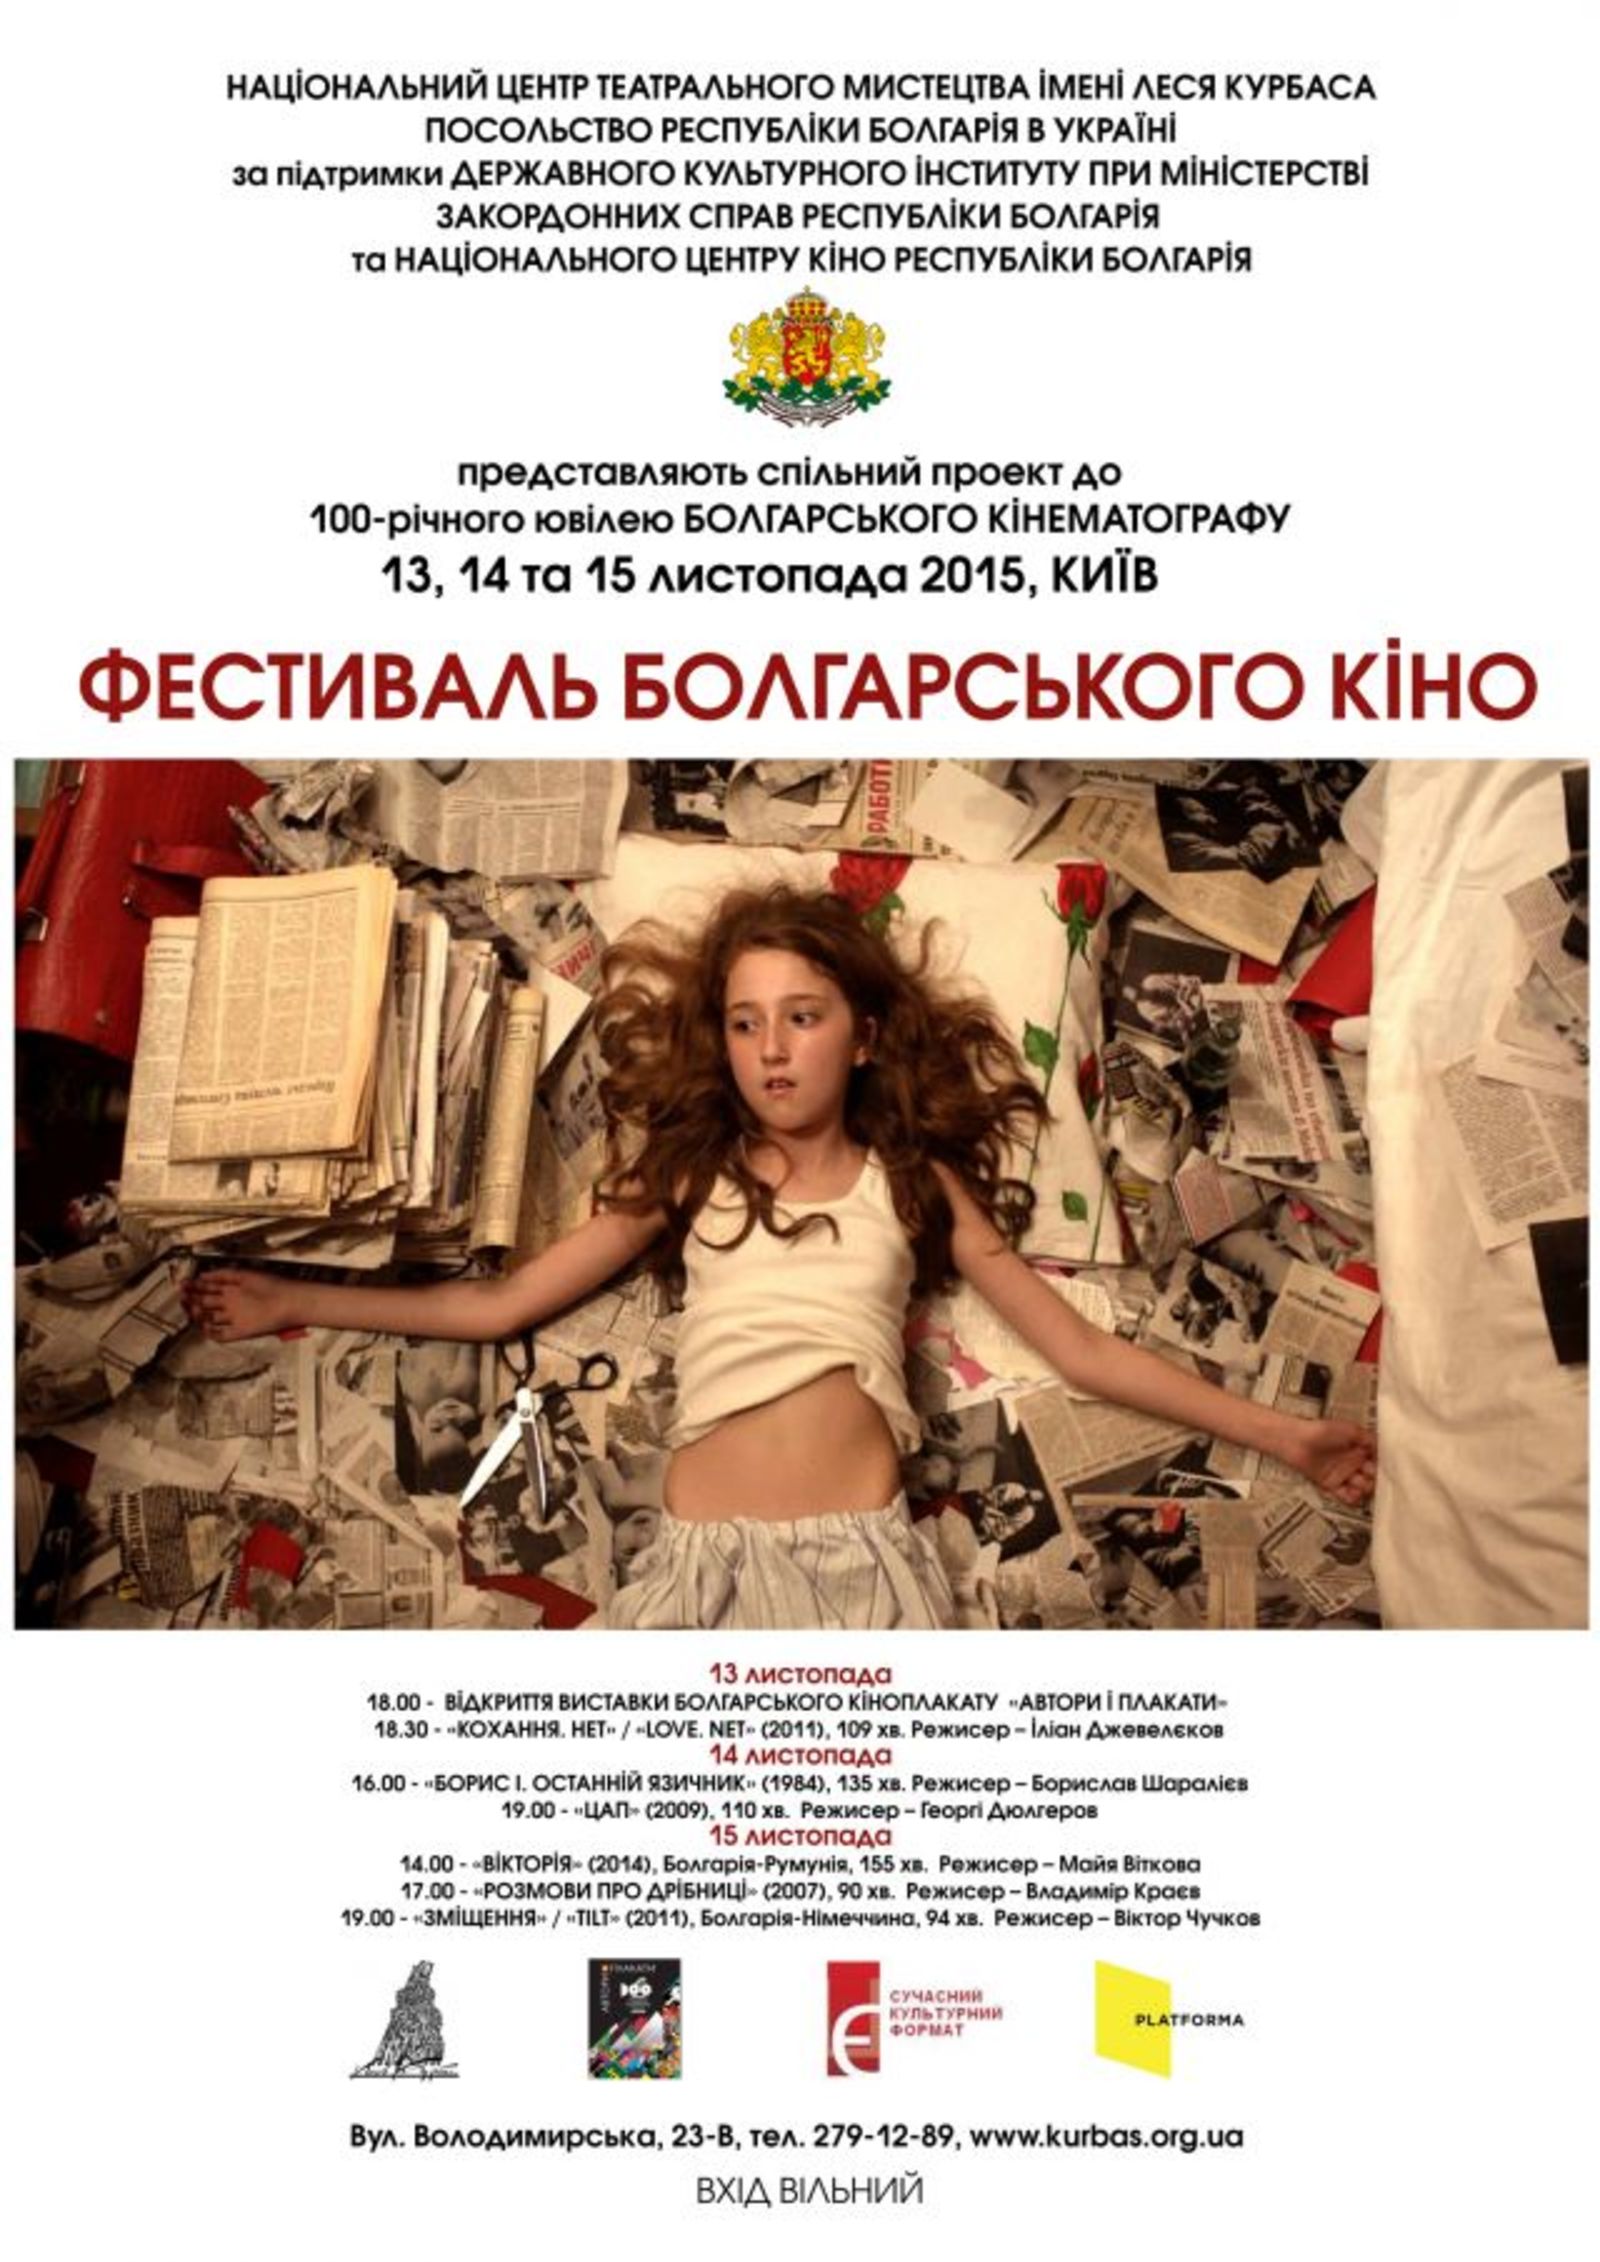 Bulgarian Film Festival in Kiev